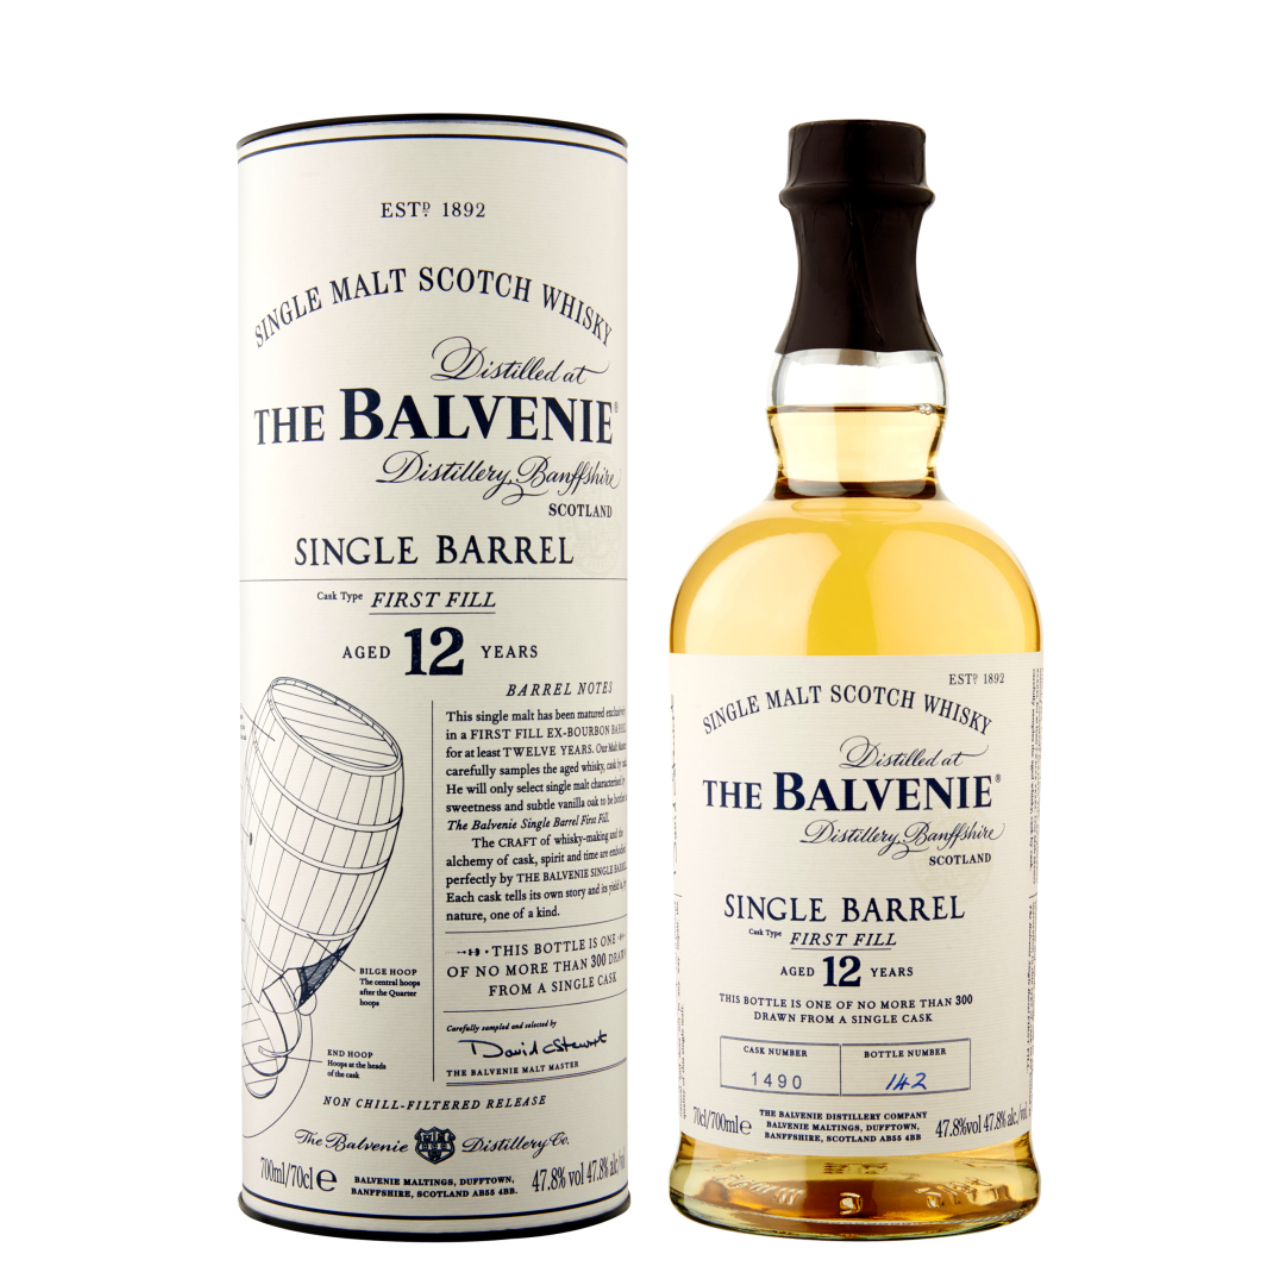 Balvenie single barrel first fill